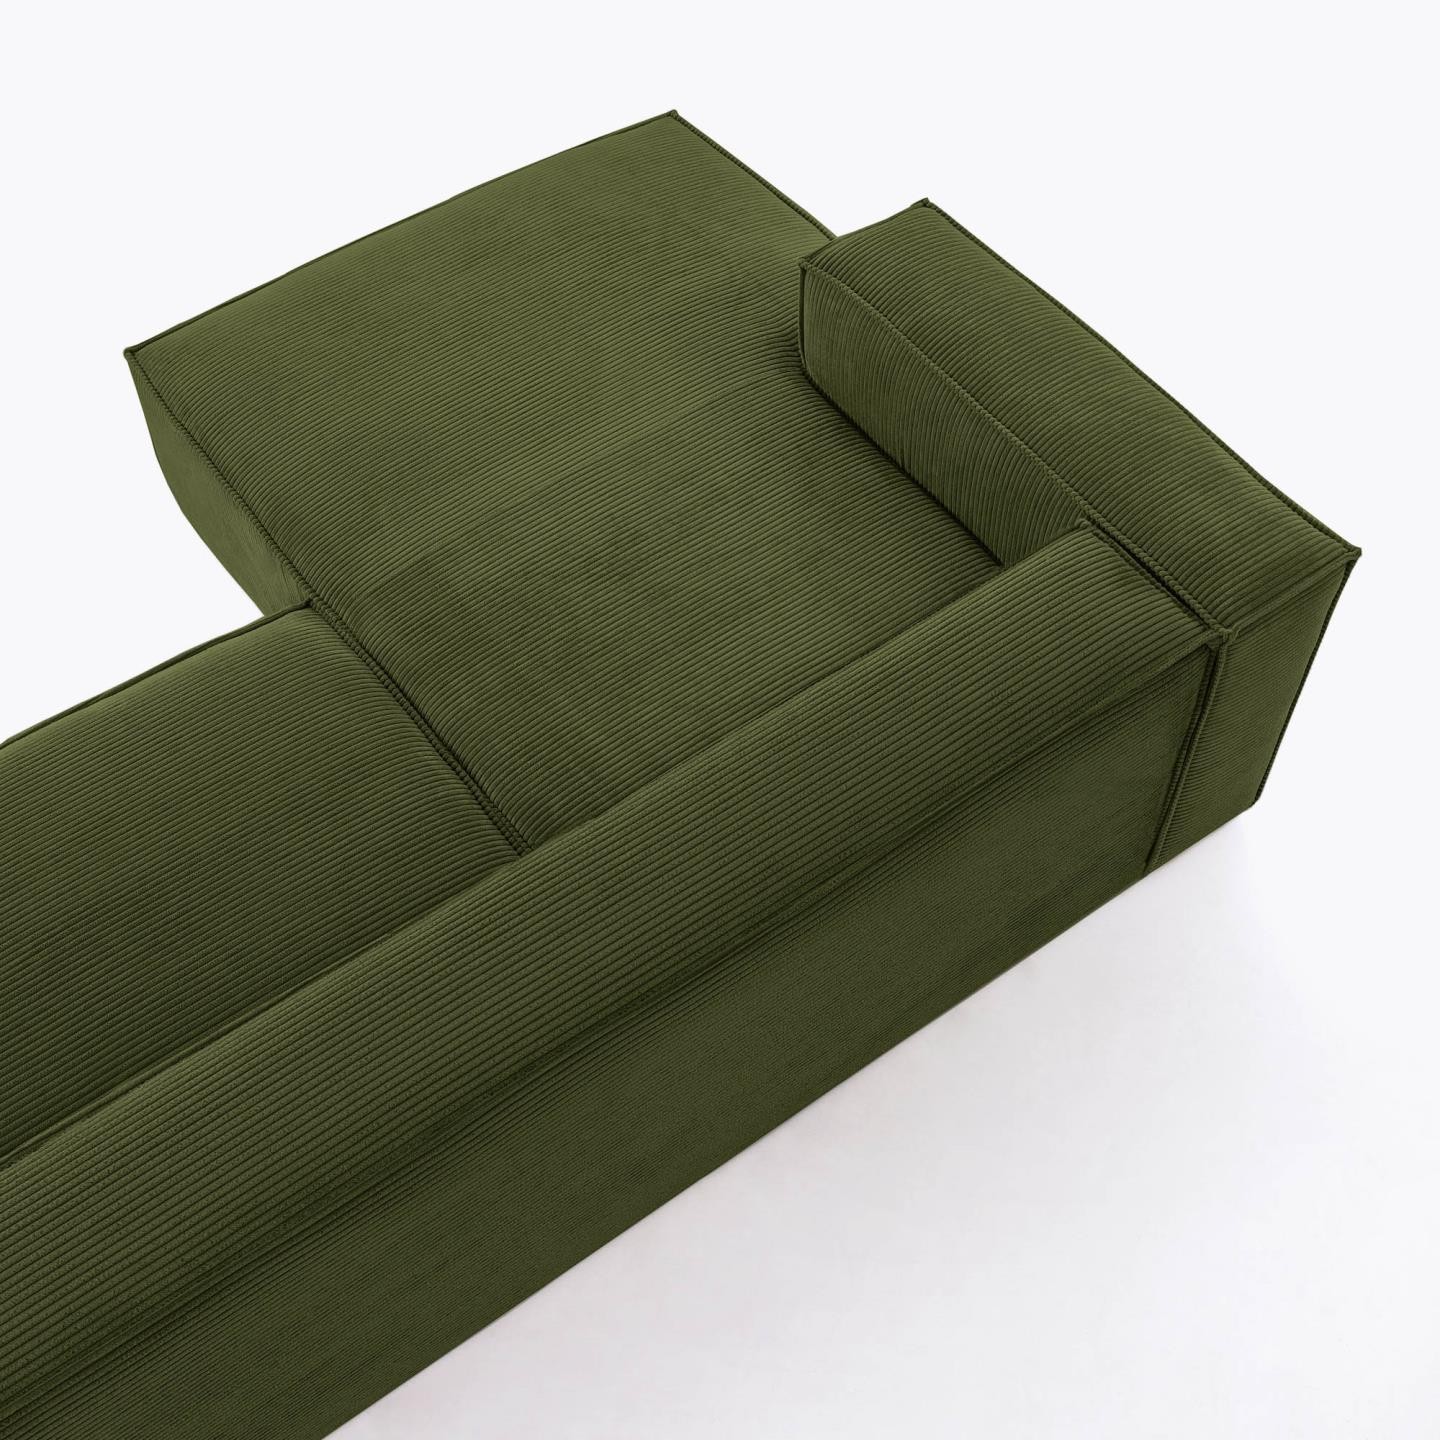 Sofa Blok 2-osobowa z szezlongiem lewostronnym, zielona